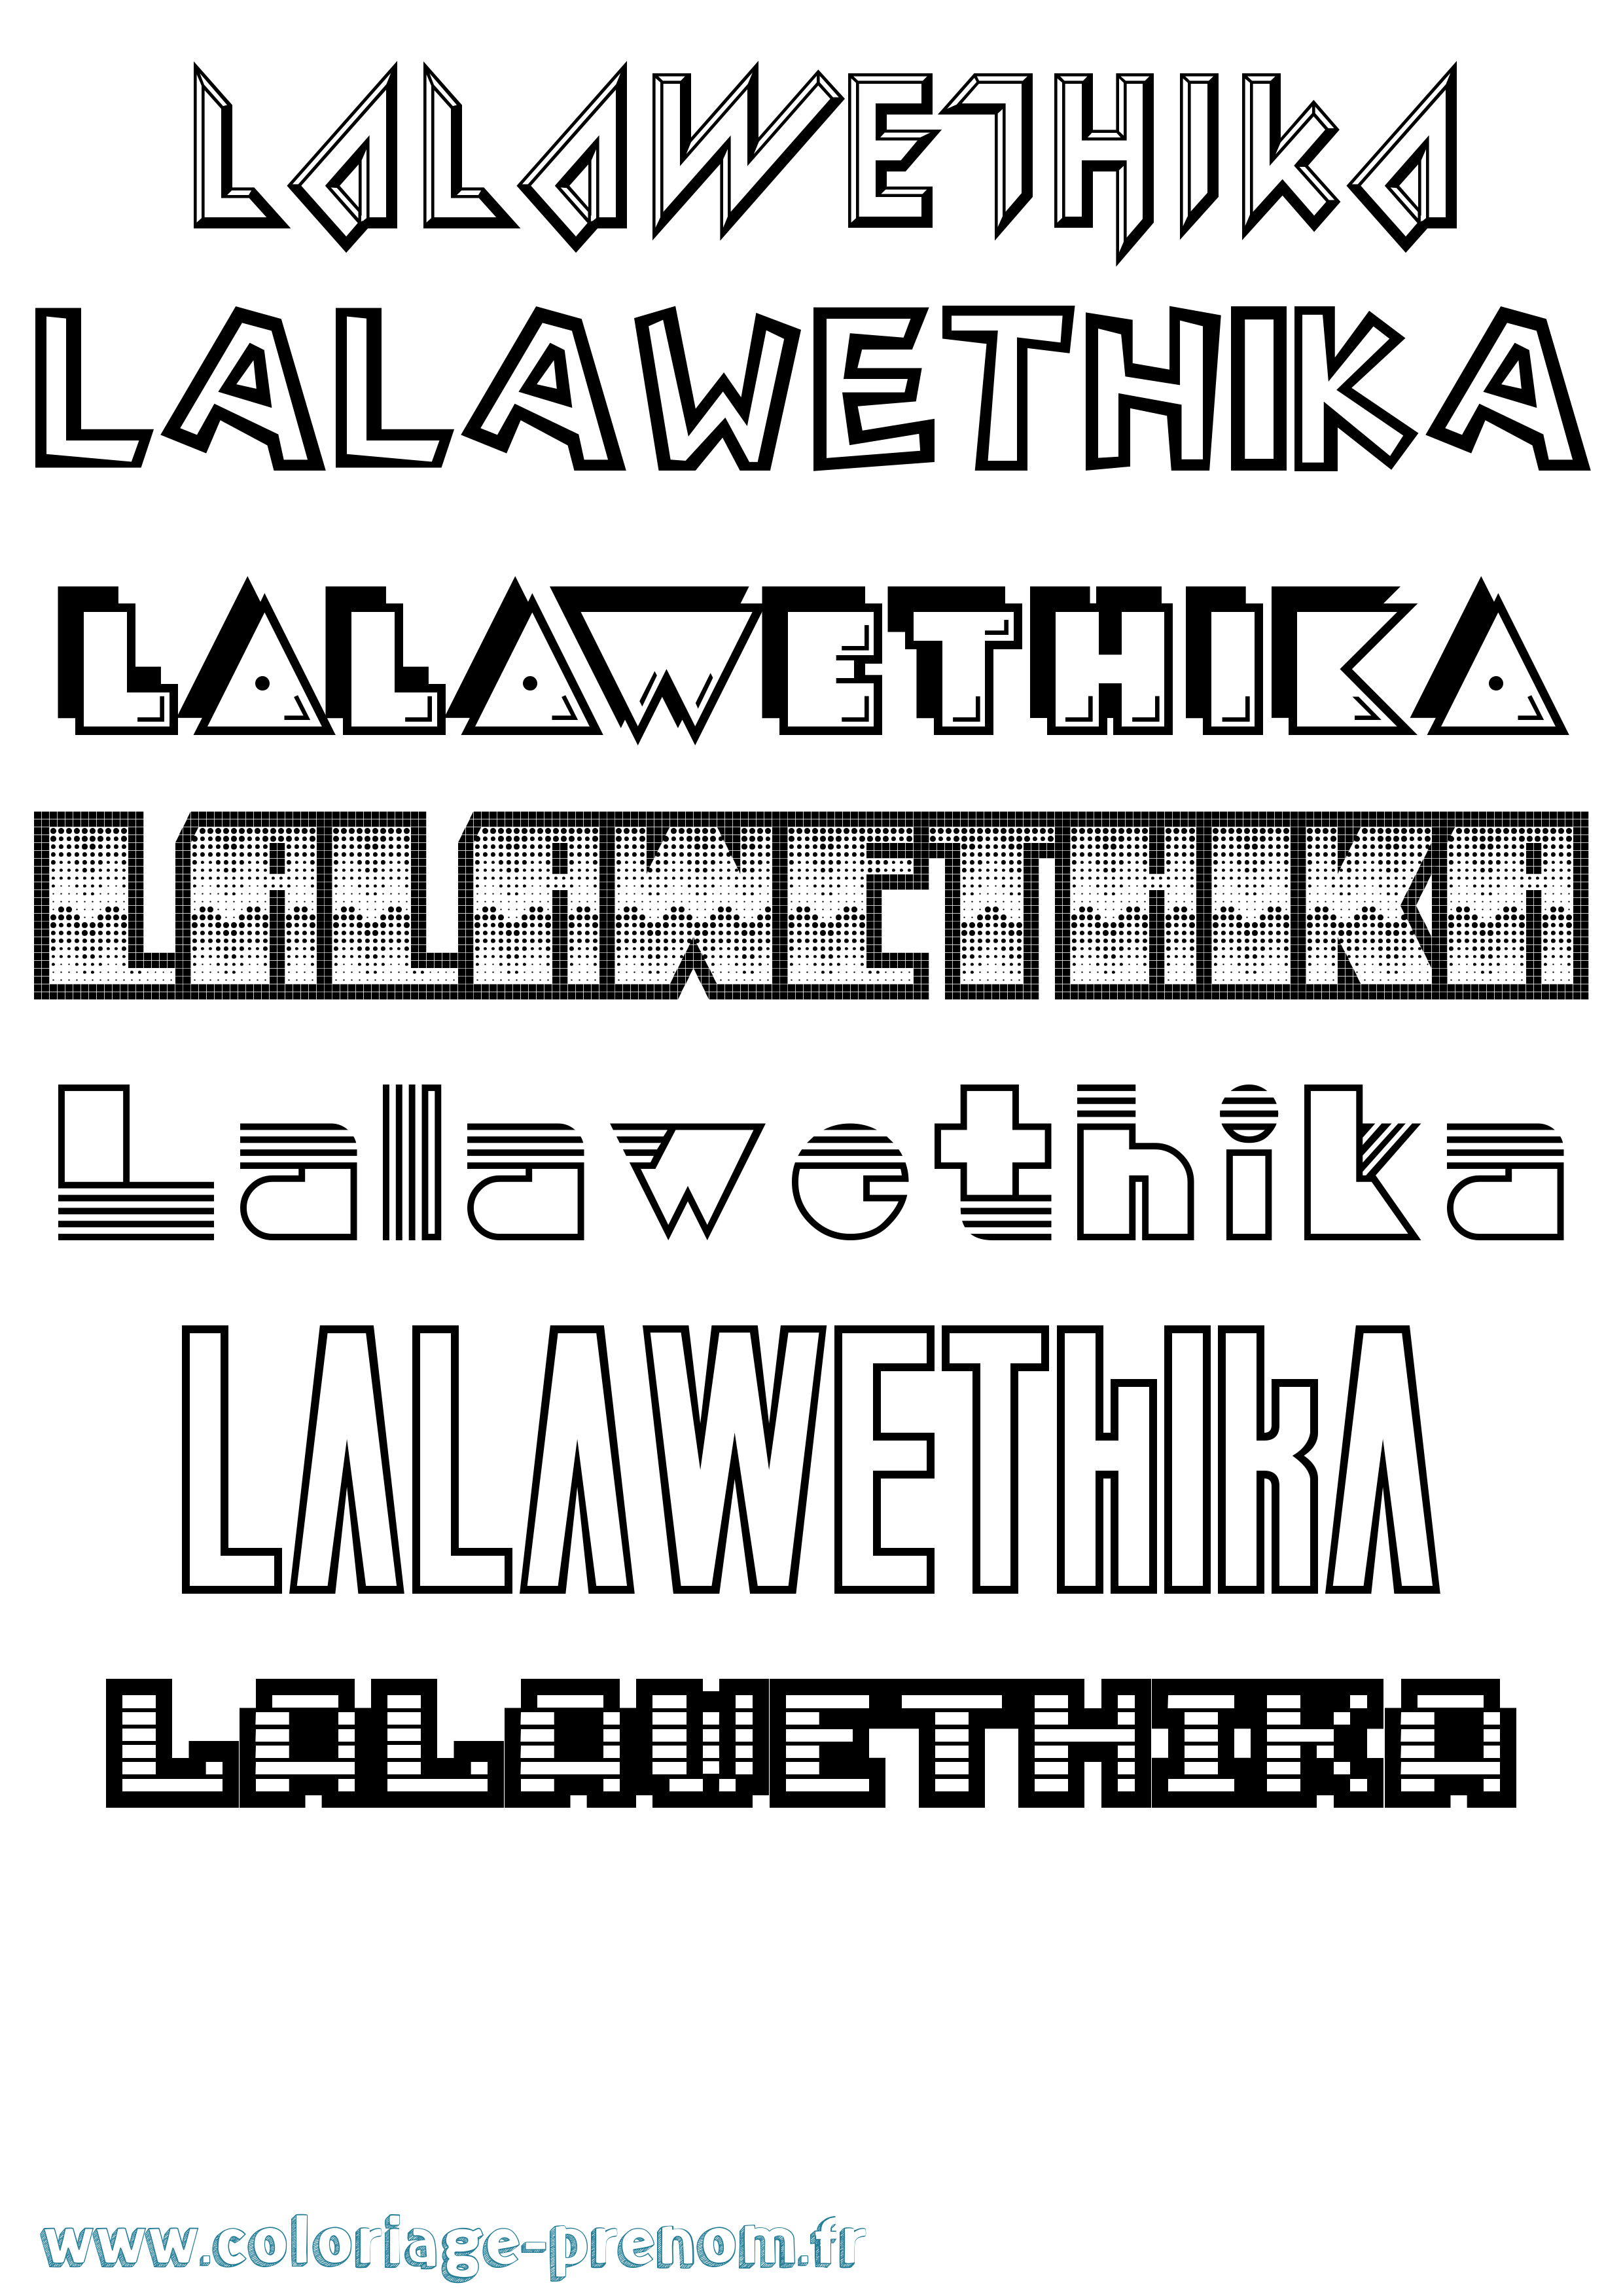 Coloriage prénom Lalawethika Jeux Vidéos